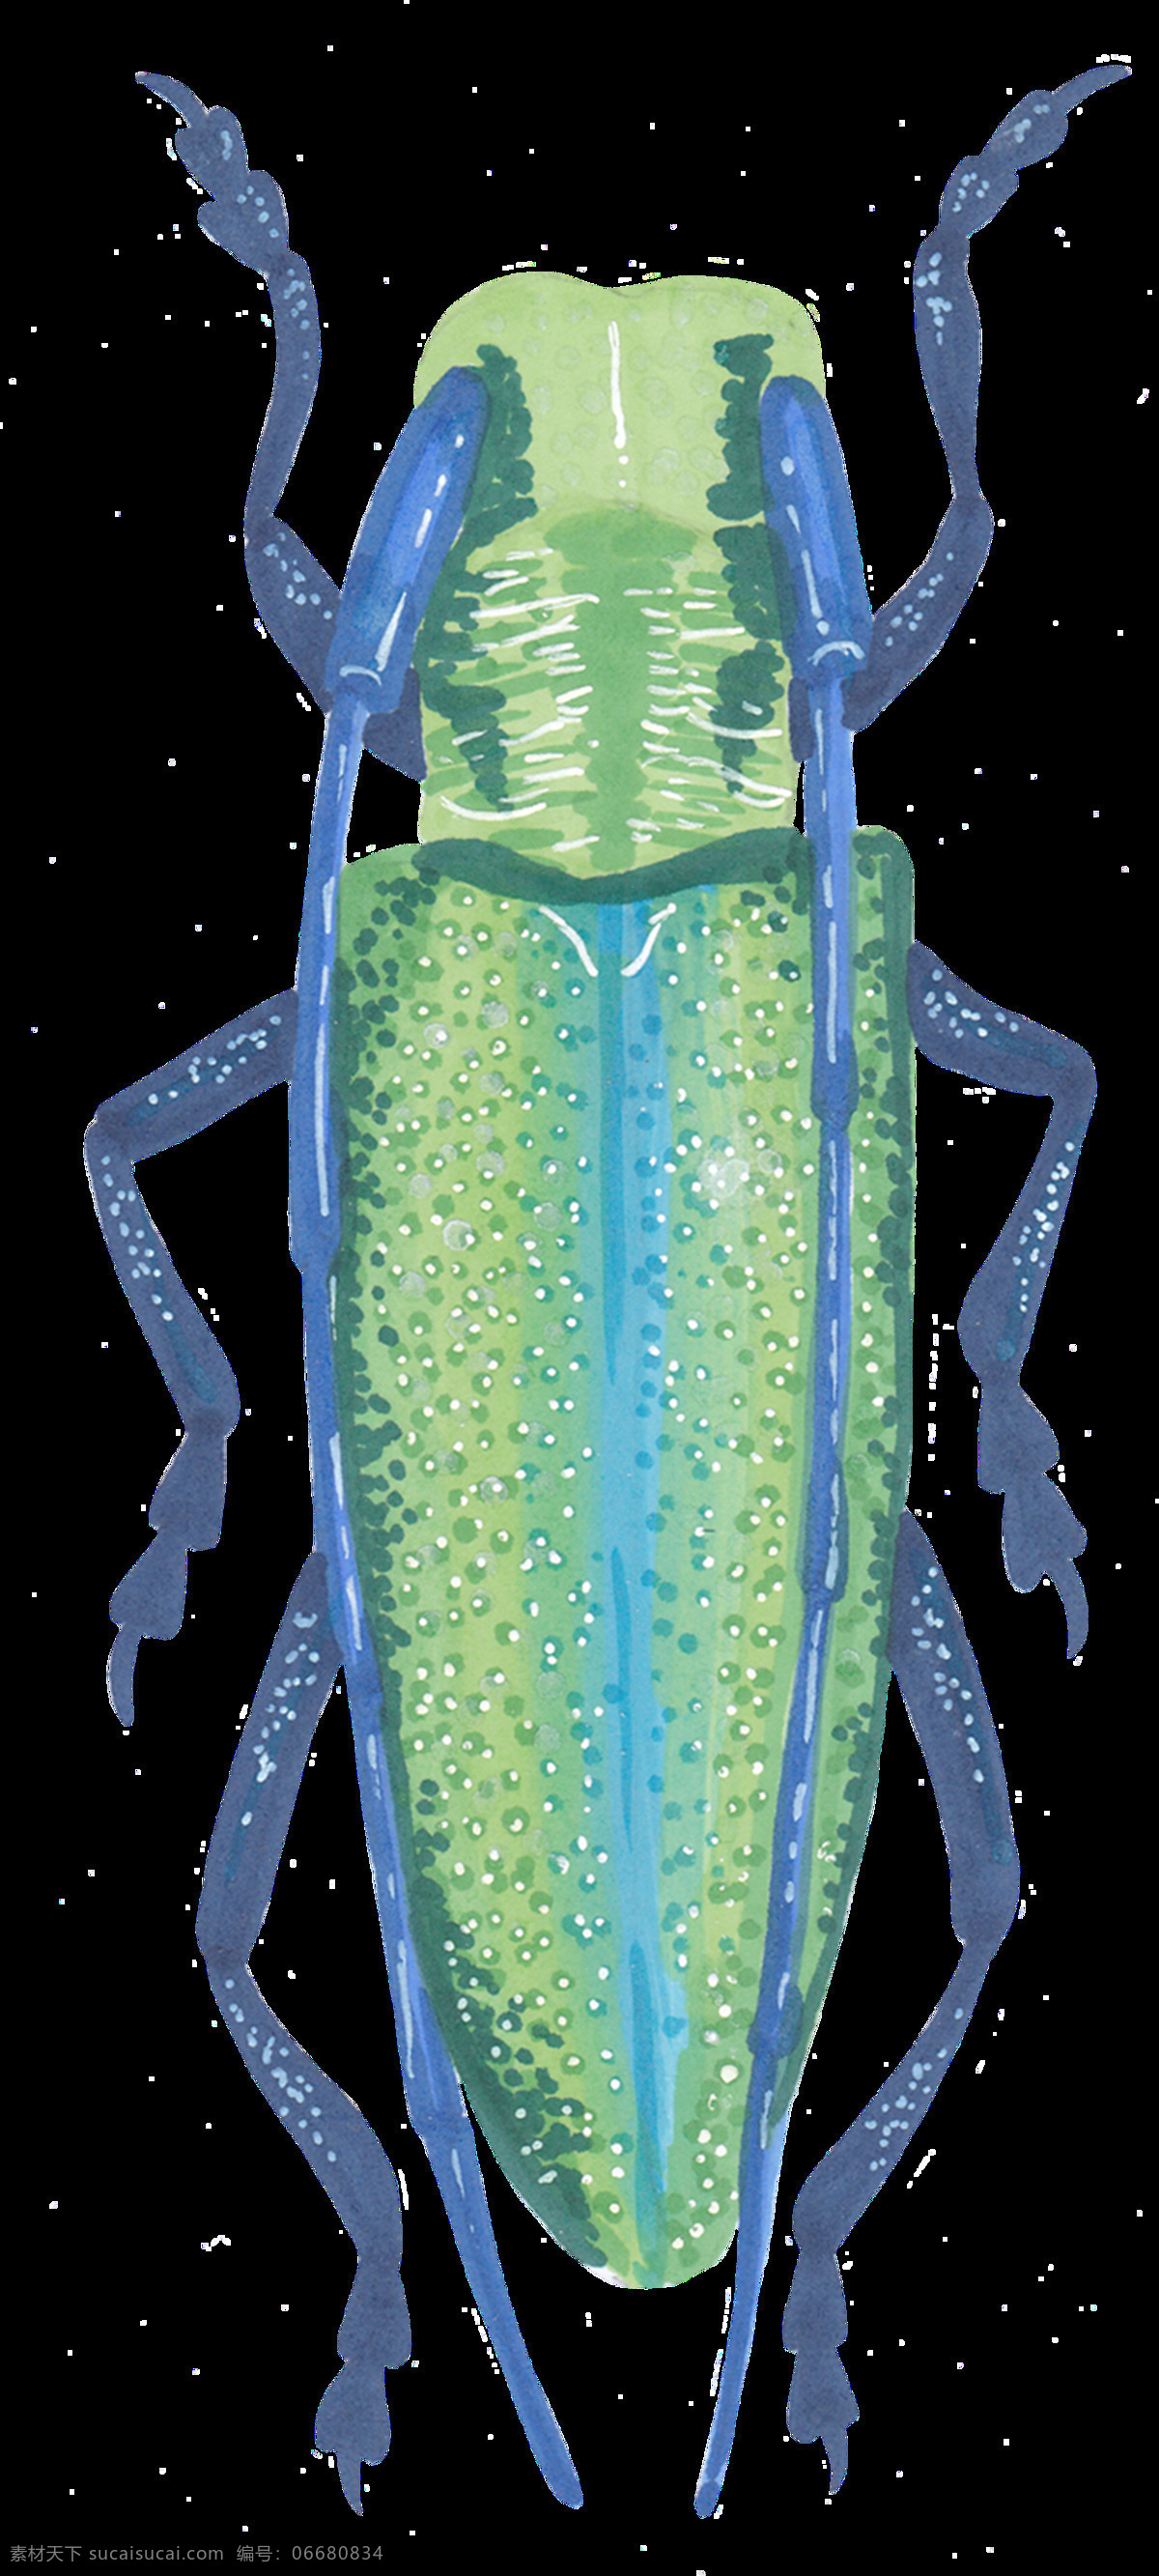 手绘 大型 卡通 昆虫 透明 透明素材 免扣素材 装饰图片 蓝色 绿色 抓子 触角